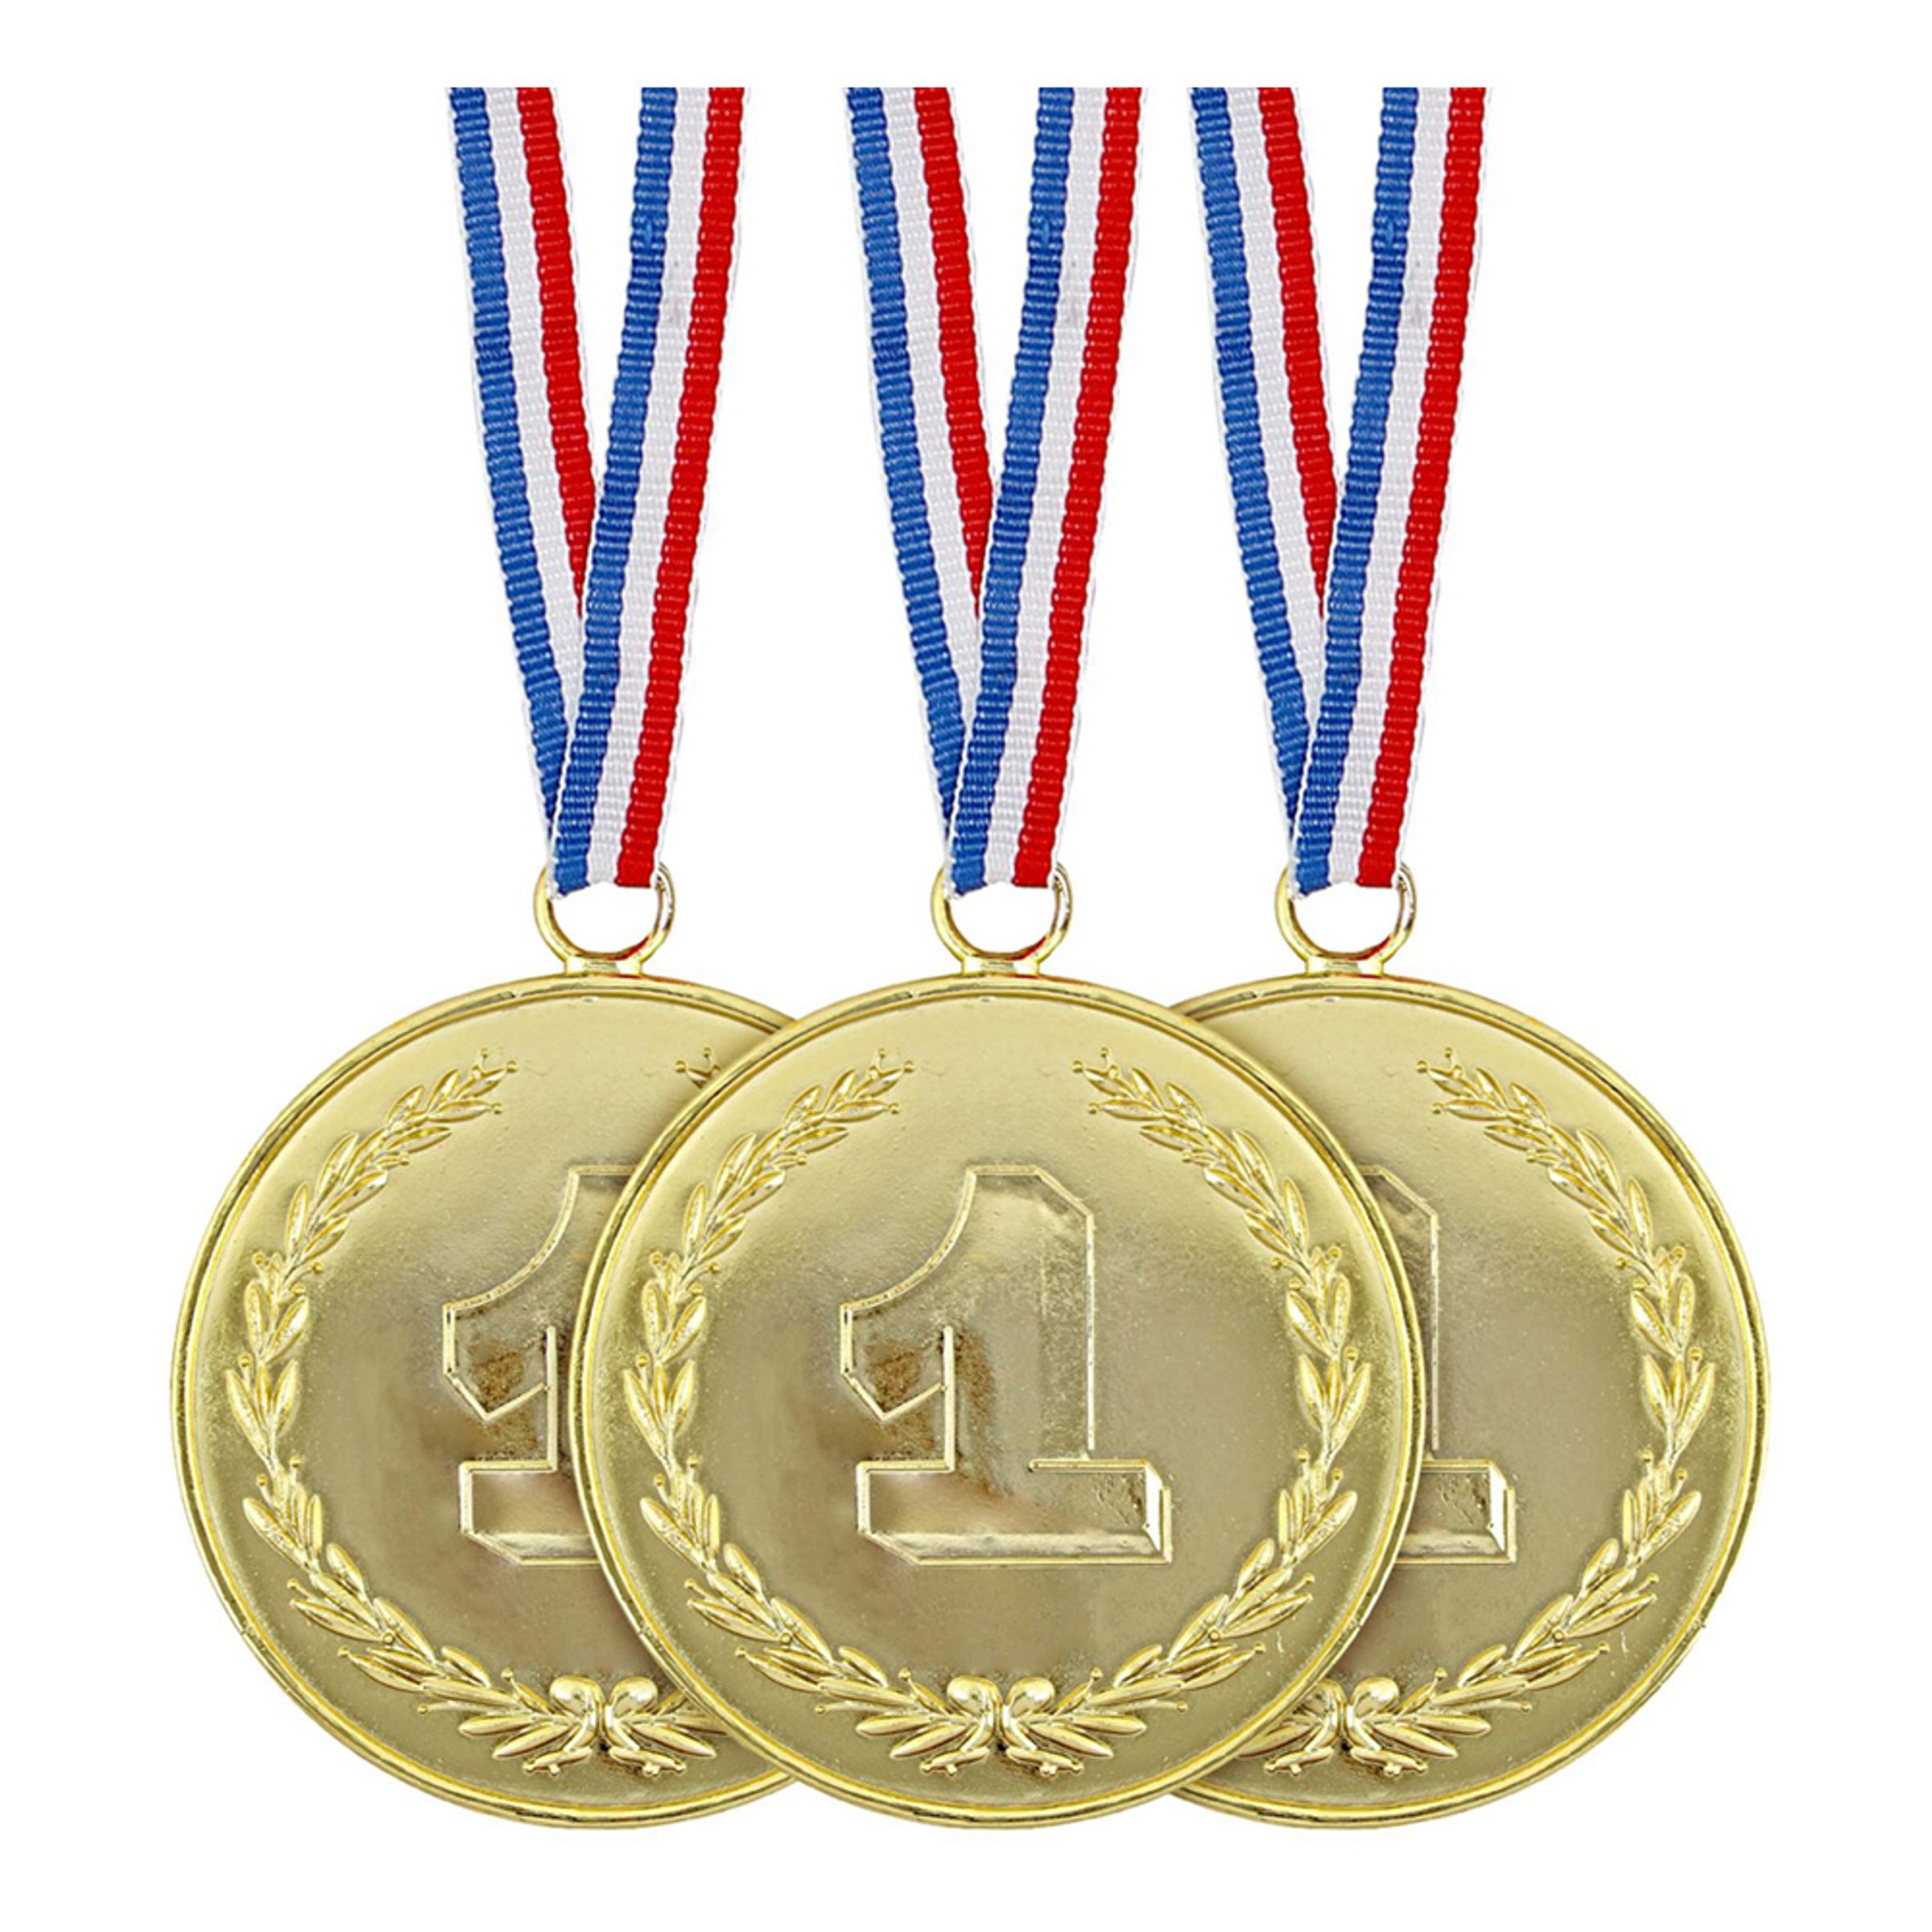 Guldmedaljer - 3-pack